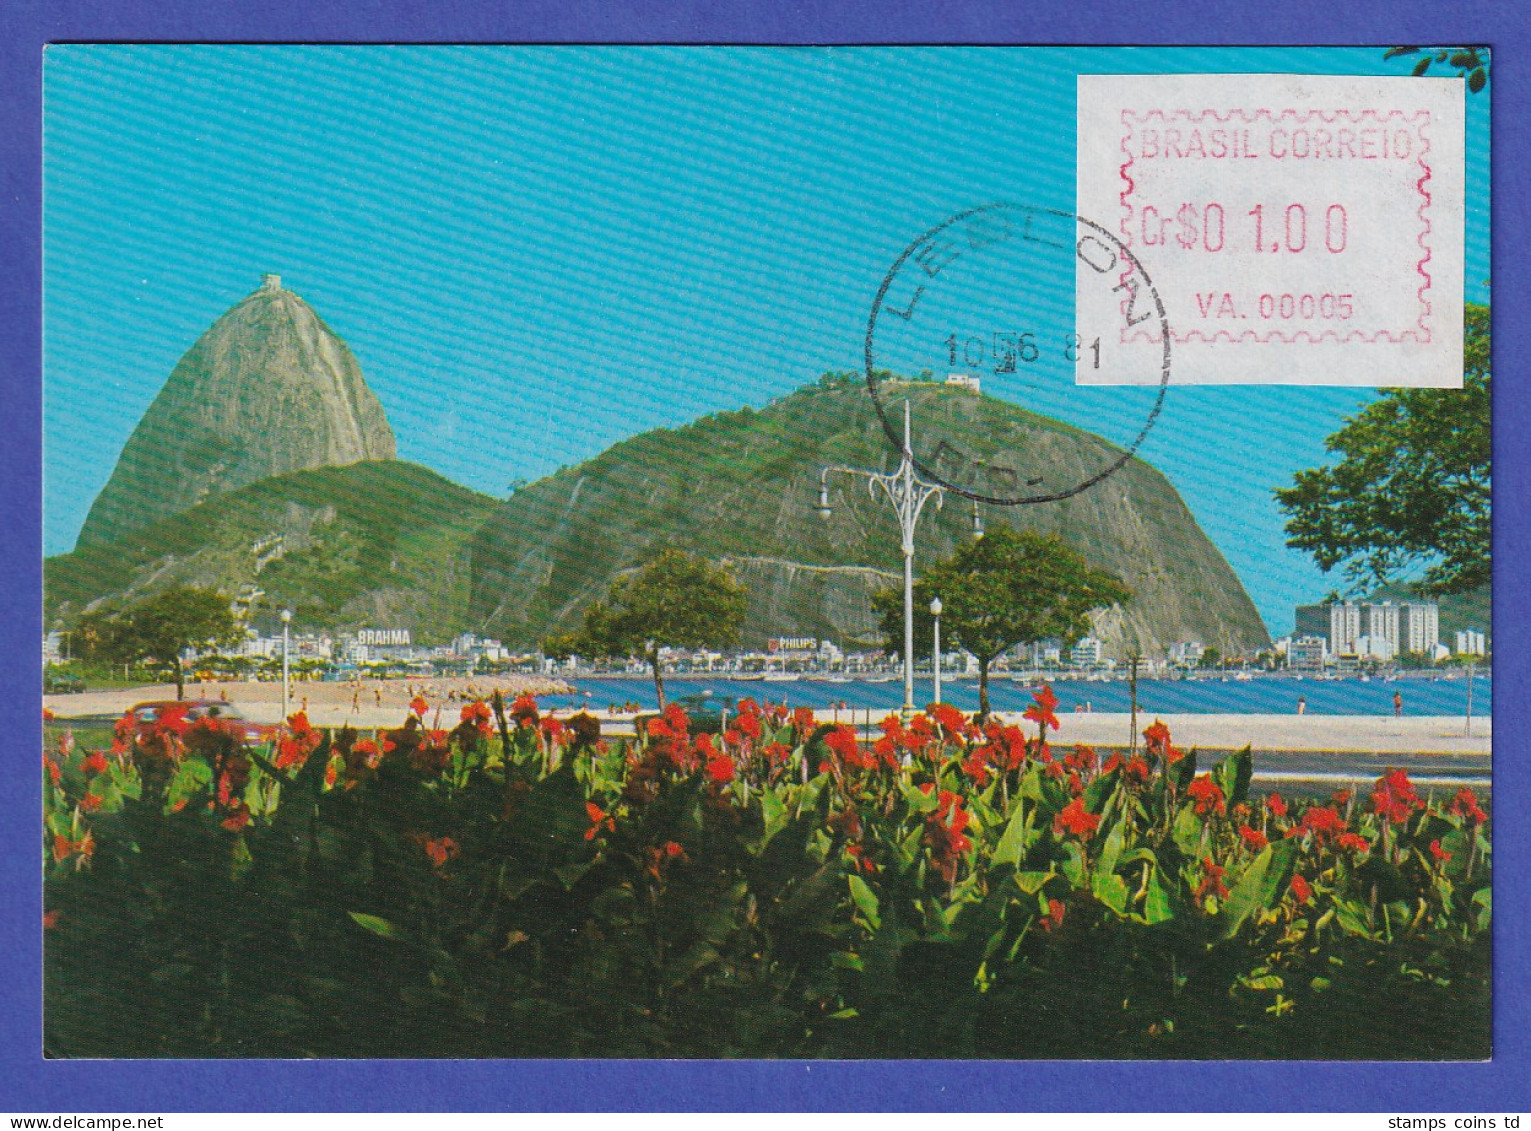 Brasilien Frama-ATM AG.00006 Und VA.00005 LEBLON Auf Ansichtskarte, O 10.06.81 - Frankeervignetten (Frama)